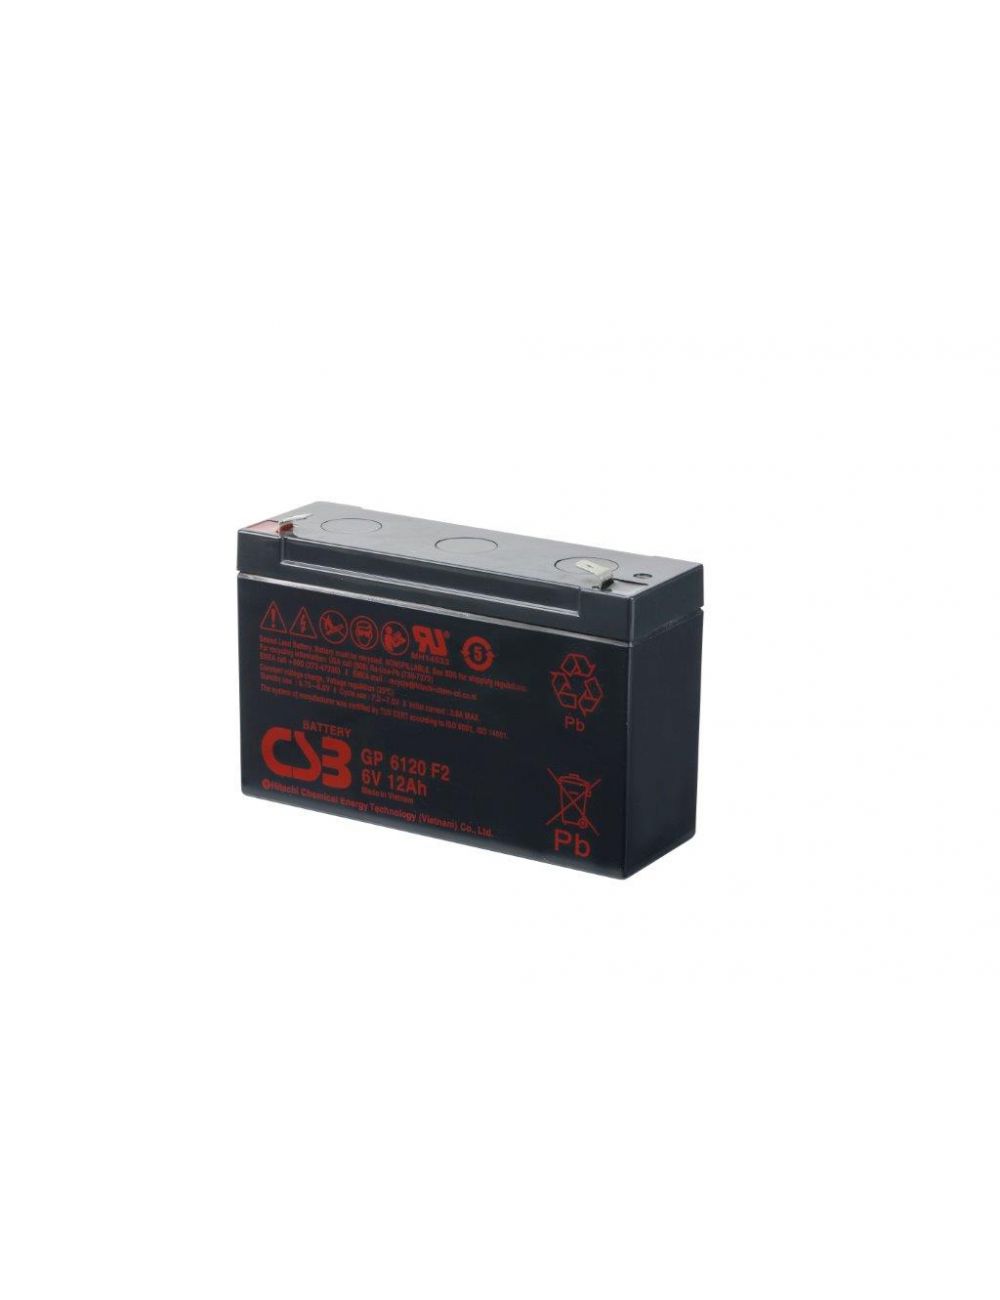 Batería para balanza digital 6V 12Ah CSB serie GP - CSB-GP6120 -  -  - 1